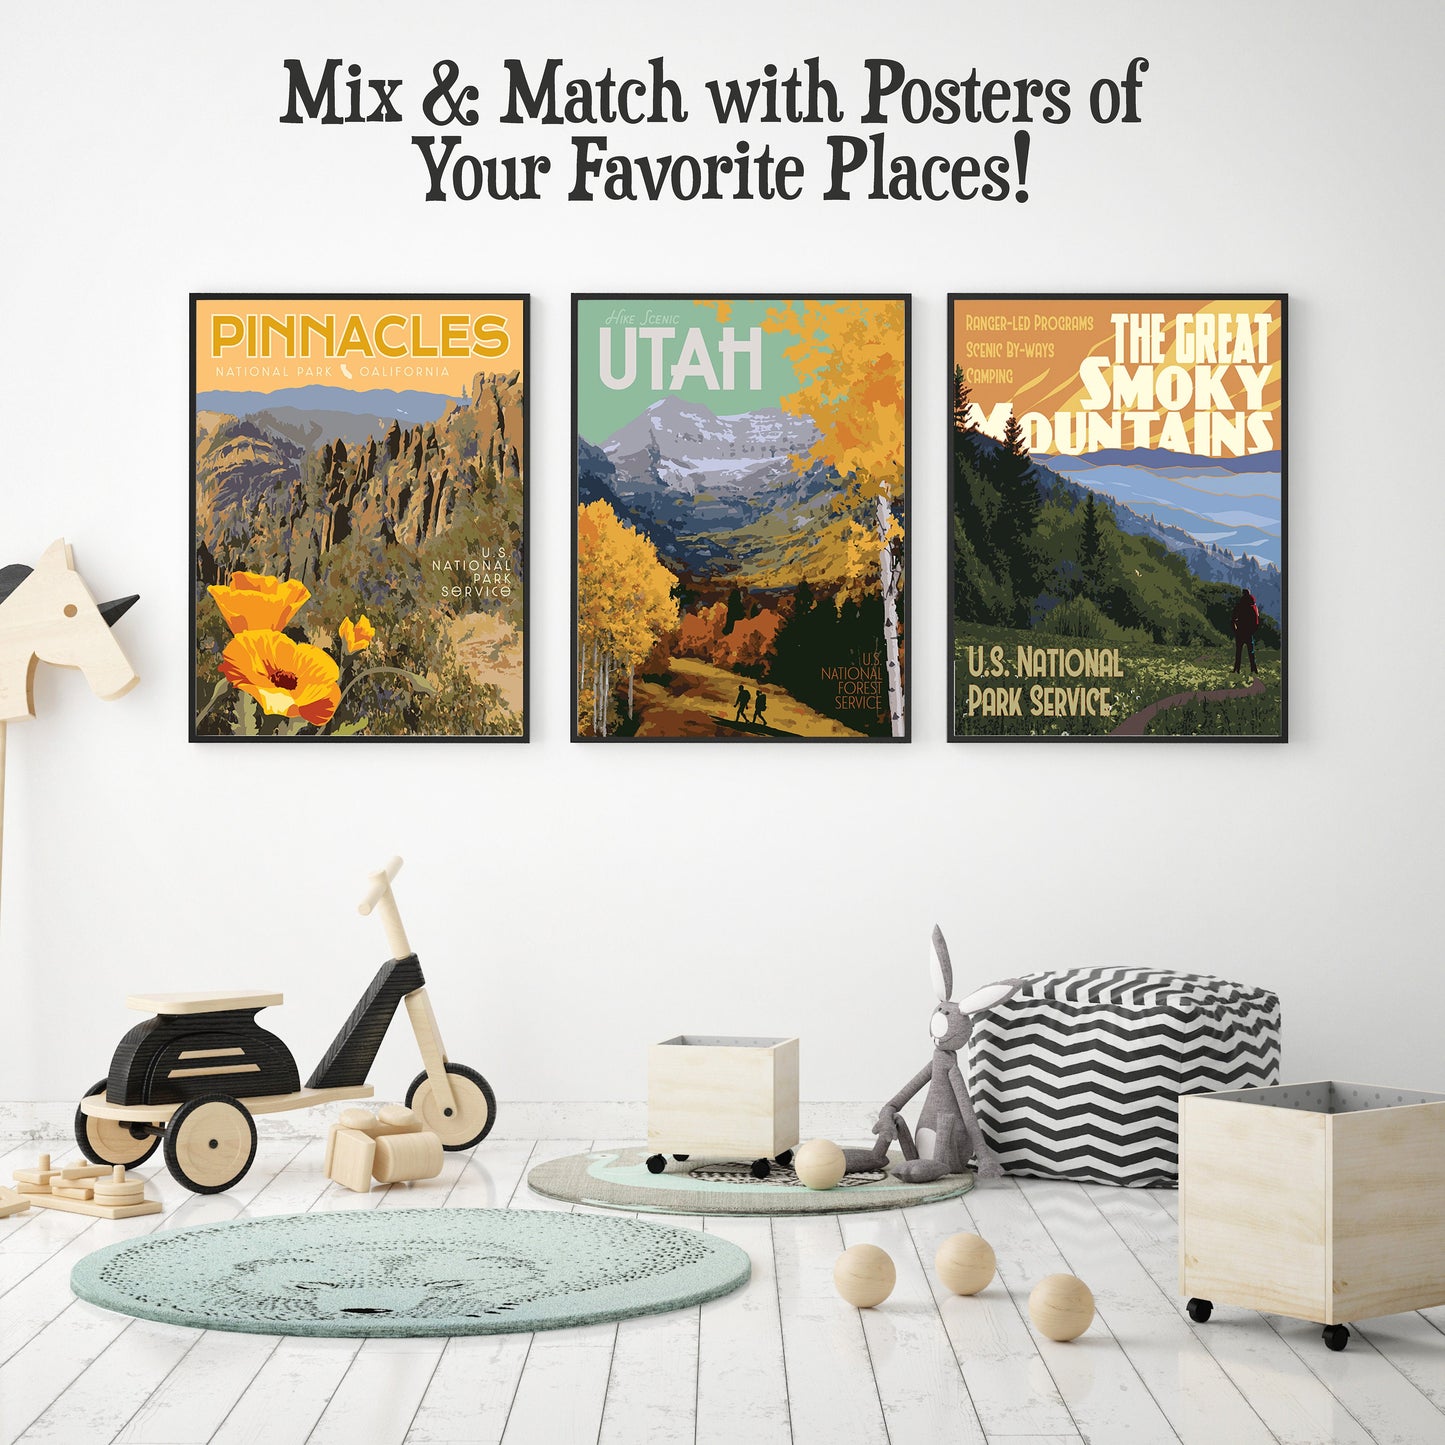 Utah Timpanogos Print, Timpanogos Hiking Poster, Mount Timpanogos, Utah Mountains Vintage Style Travel Art